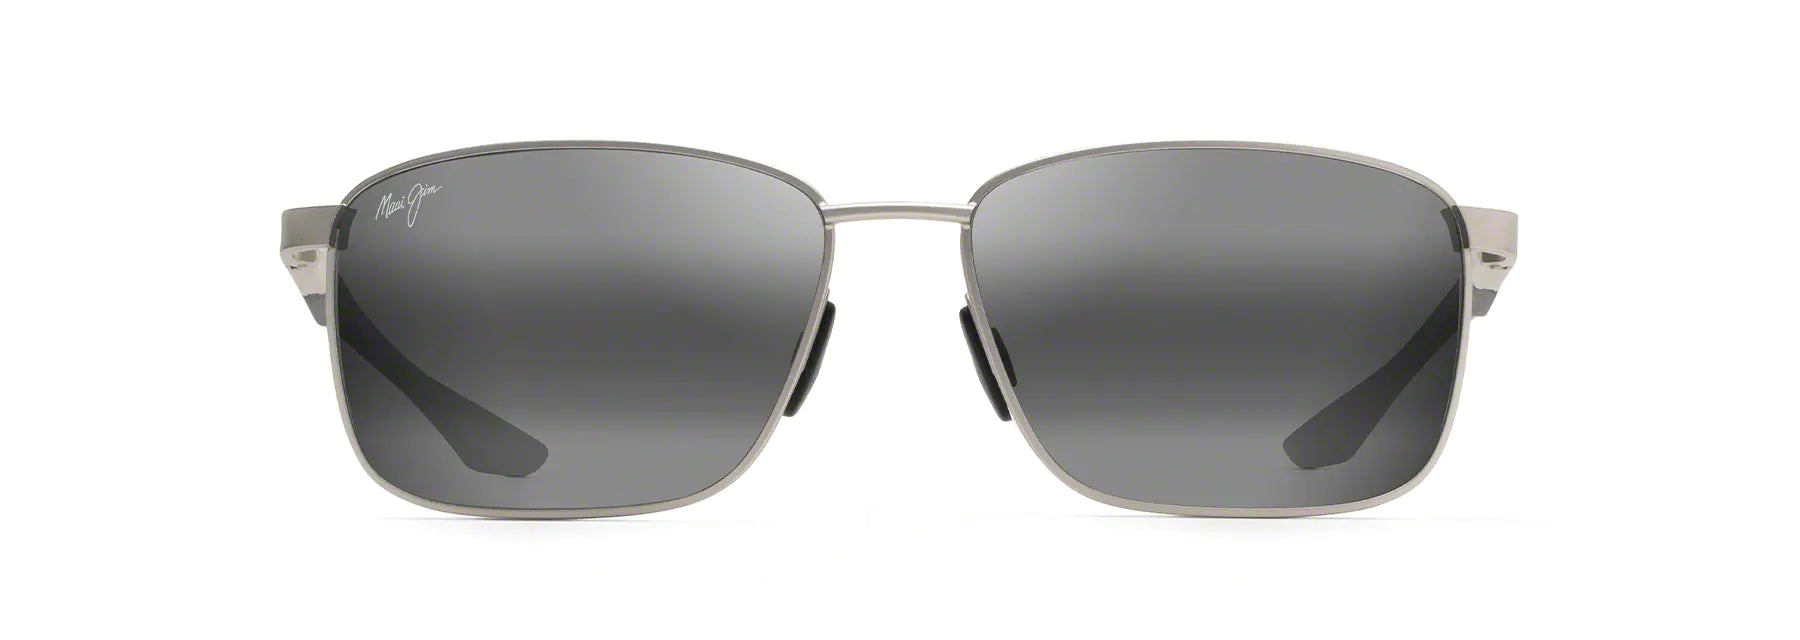 Sunglasses-KA'ALA Neutral Grey-856-17-Maui Jim – Coastal Urge